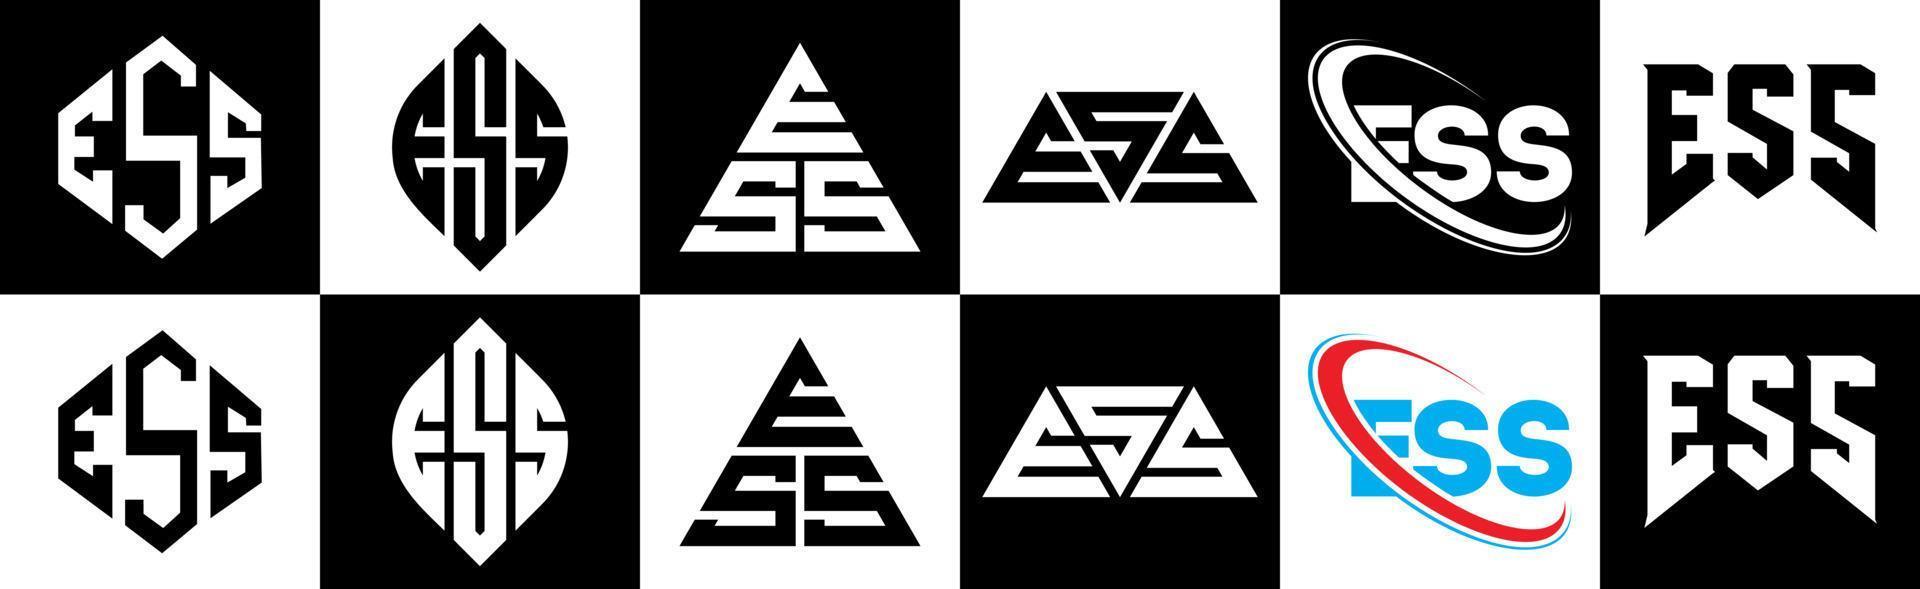 Ess-Buchstaben-Logo-Design in sechs Stilen. Ess-Polygon, Kreis, Dreieck, Sechseck, flacher und einfacher Stil mit schwarz-weißem Buchstabenlogo in einer Zeichenfläche. Ess minimalistisches und klassisches Logo vektor